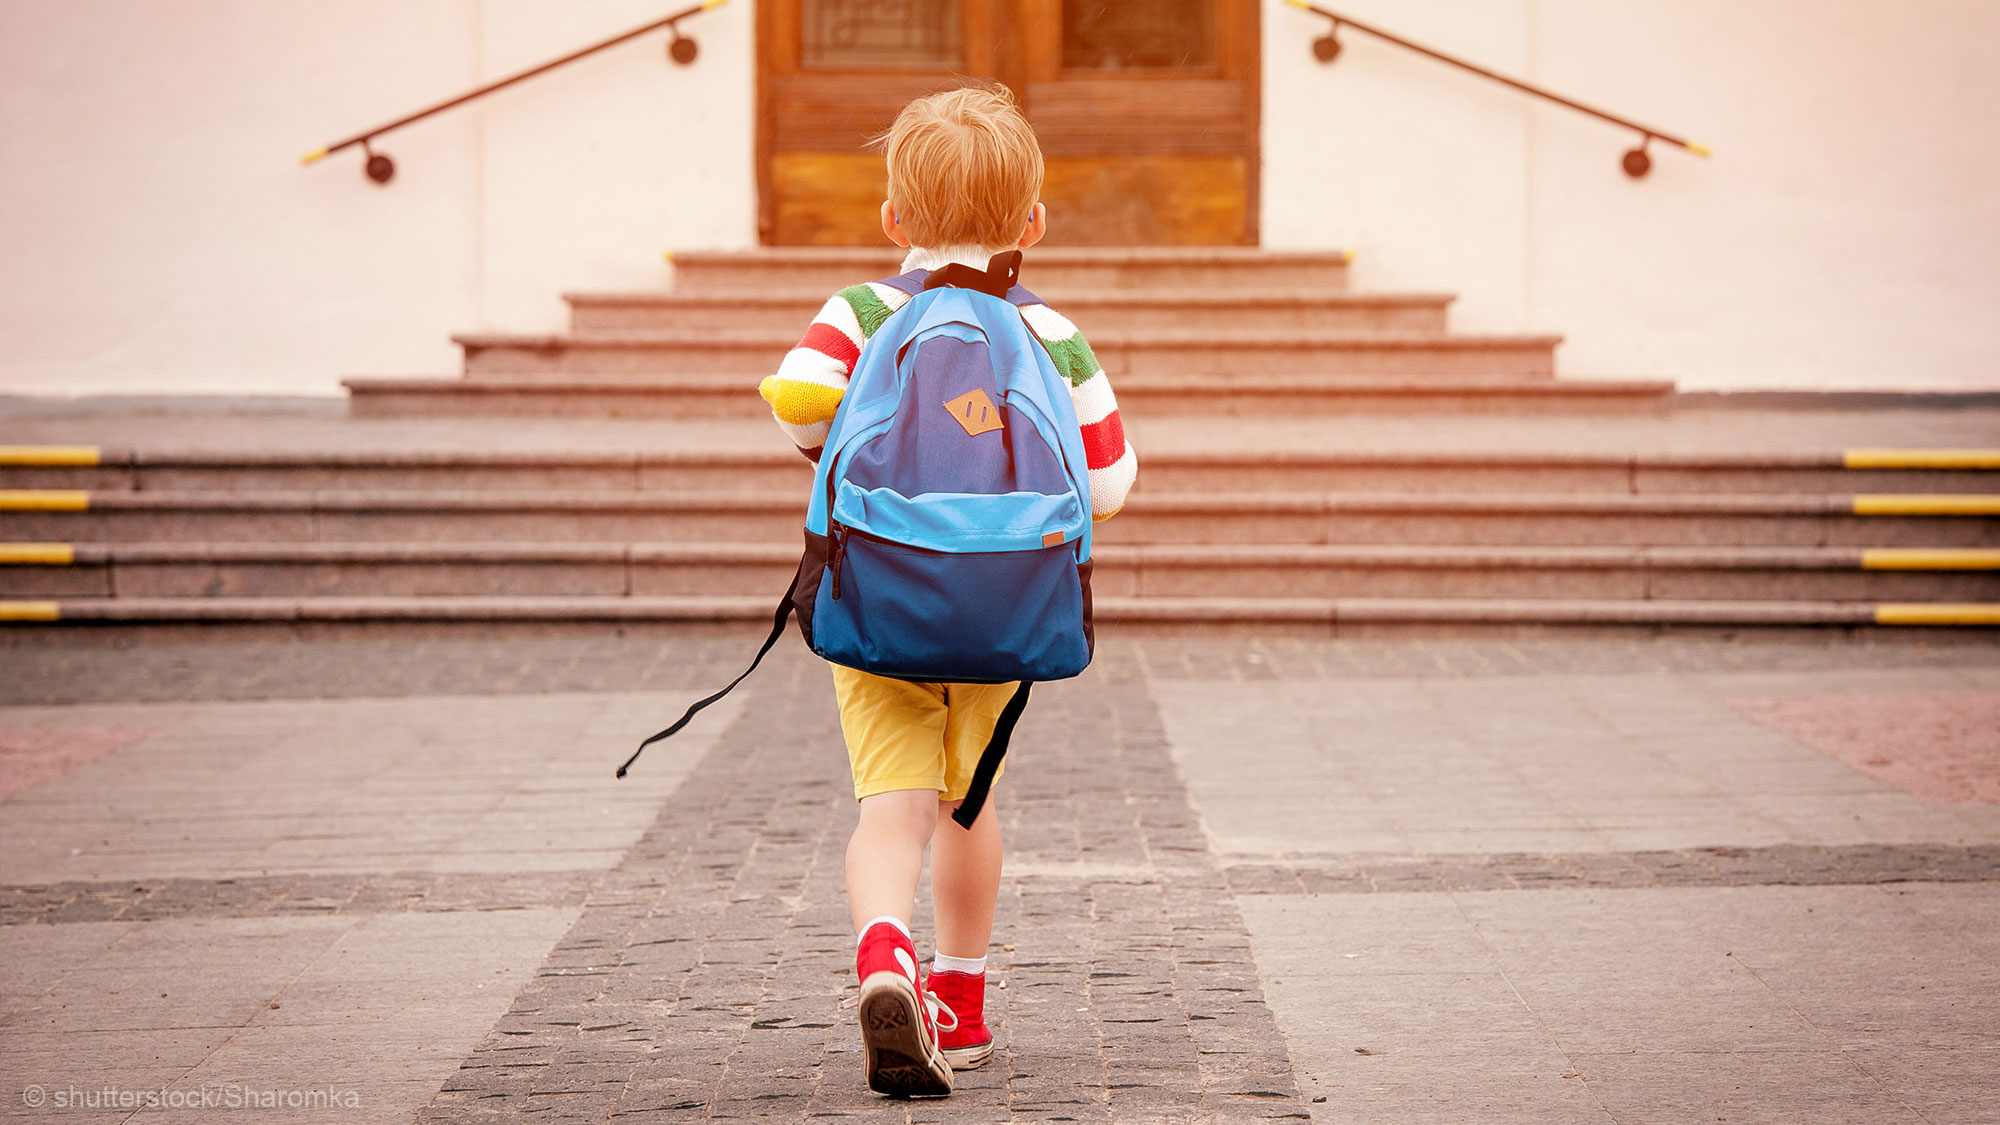 Kind auf dem Weg in die Schule